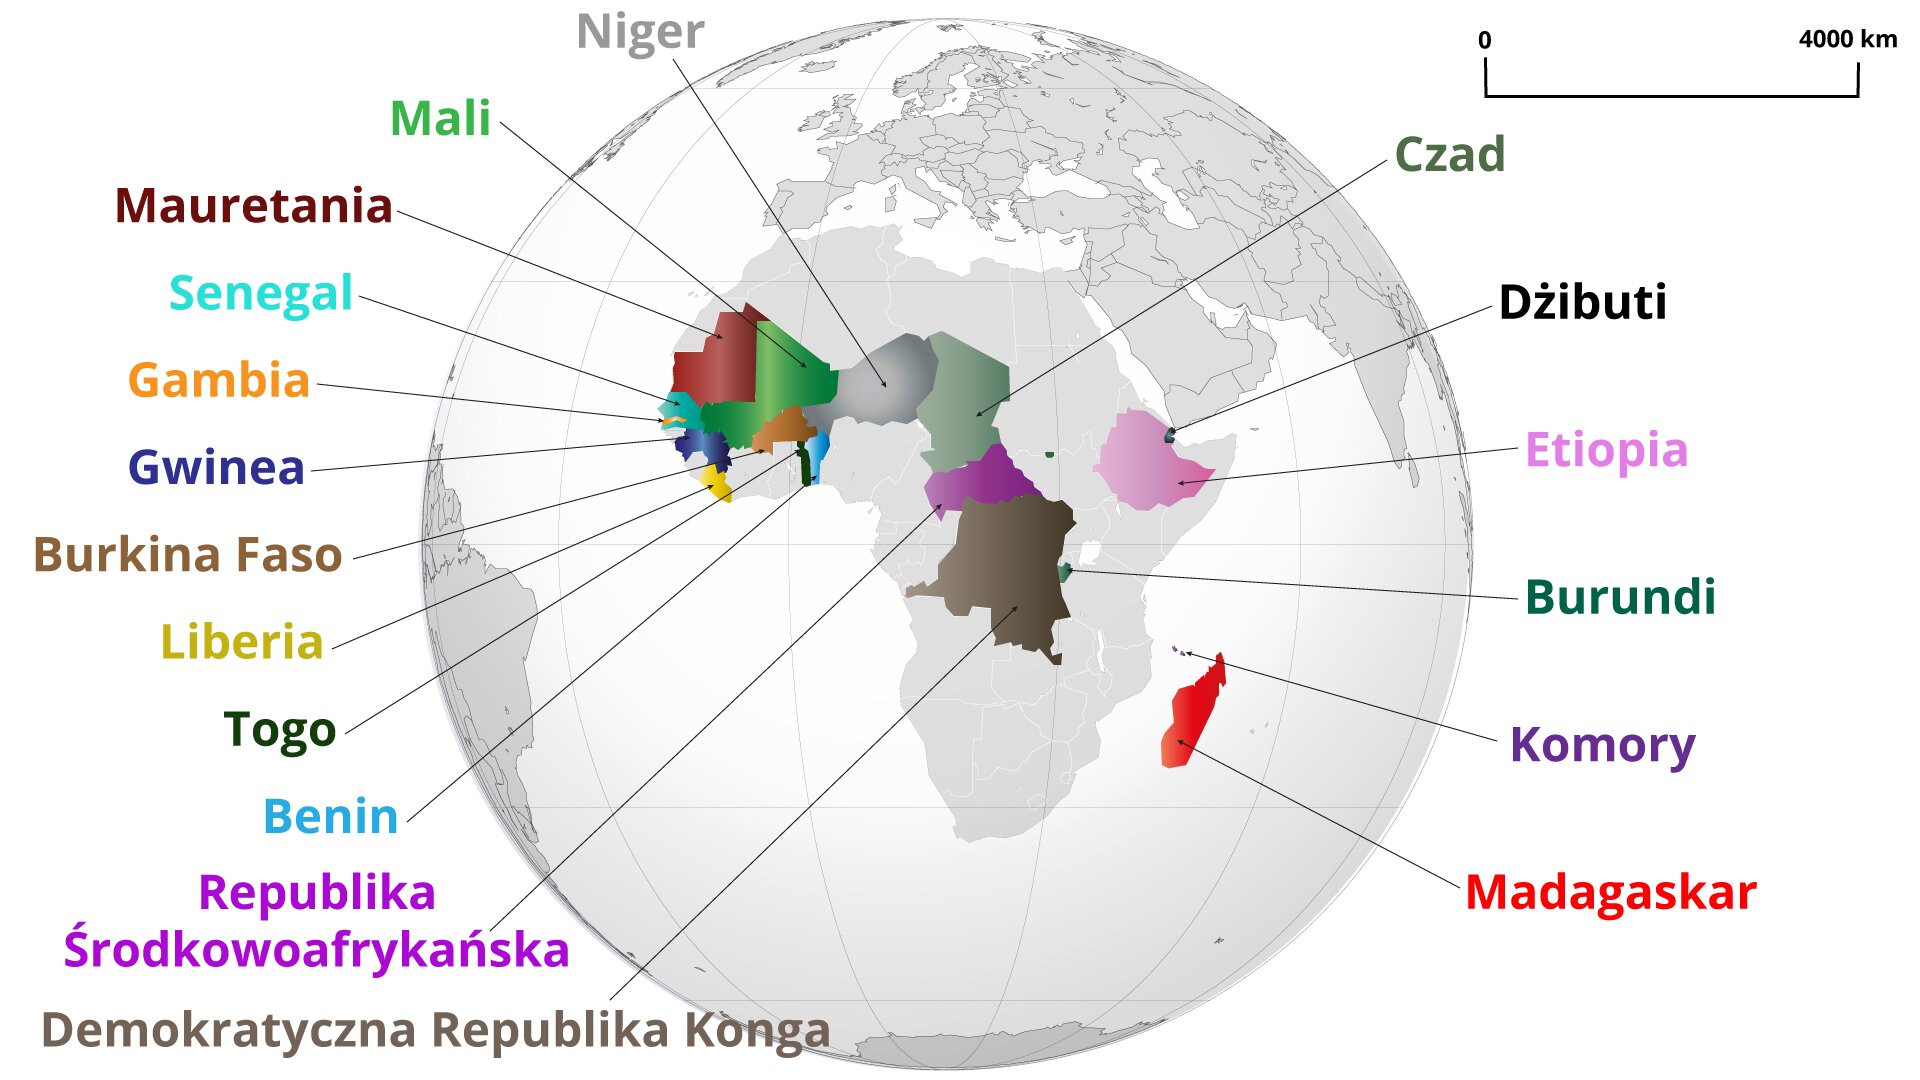 Na mapie świata zaznaczono Państwa afrykańskie otrzymujące Oficjalną Pomoc Rozwojową od Francji w 2018 r. Są to:  Niger, Mali, Mauretania, Senegal, Gambia, Gwinea, Burkina Faso, Liberia, Togo, Benin, Republika Środkowoafrykańska, Demokratyczna Republika Konga, Czad, Dżibuti, Etiopia, Burundi, Komory, Madagaskar.